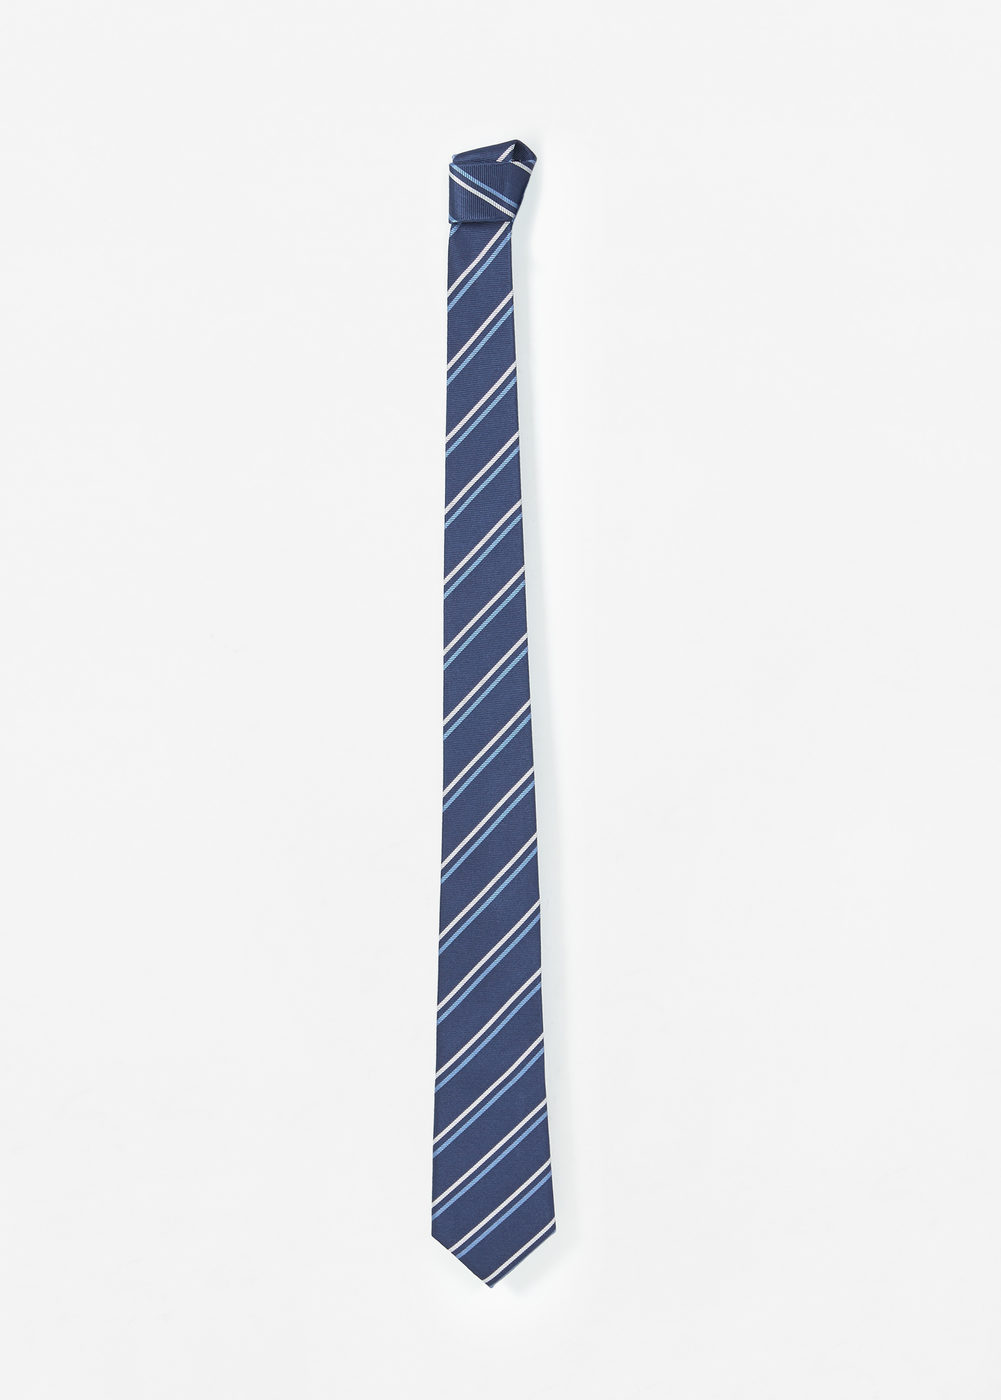 Mango csíkos selyem nyakkendő 2016.12.22 fotója